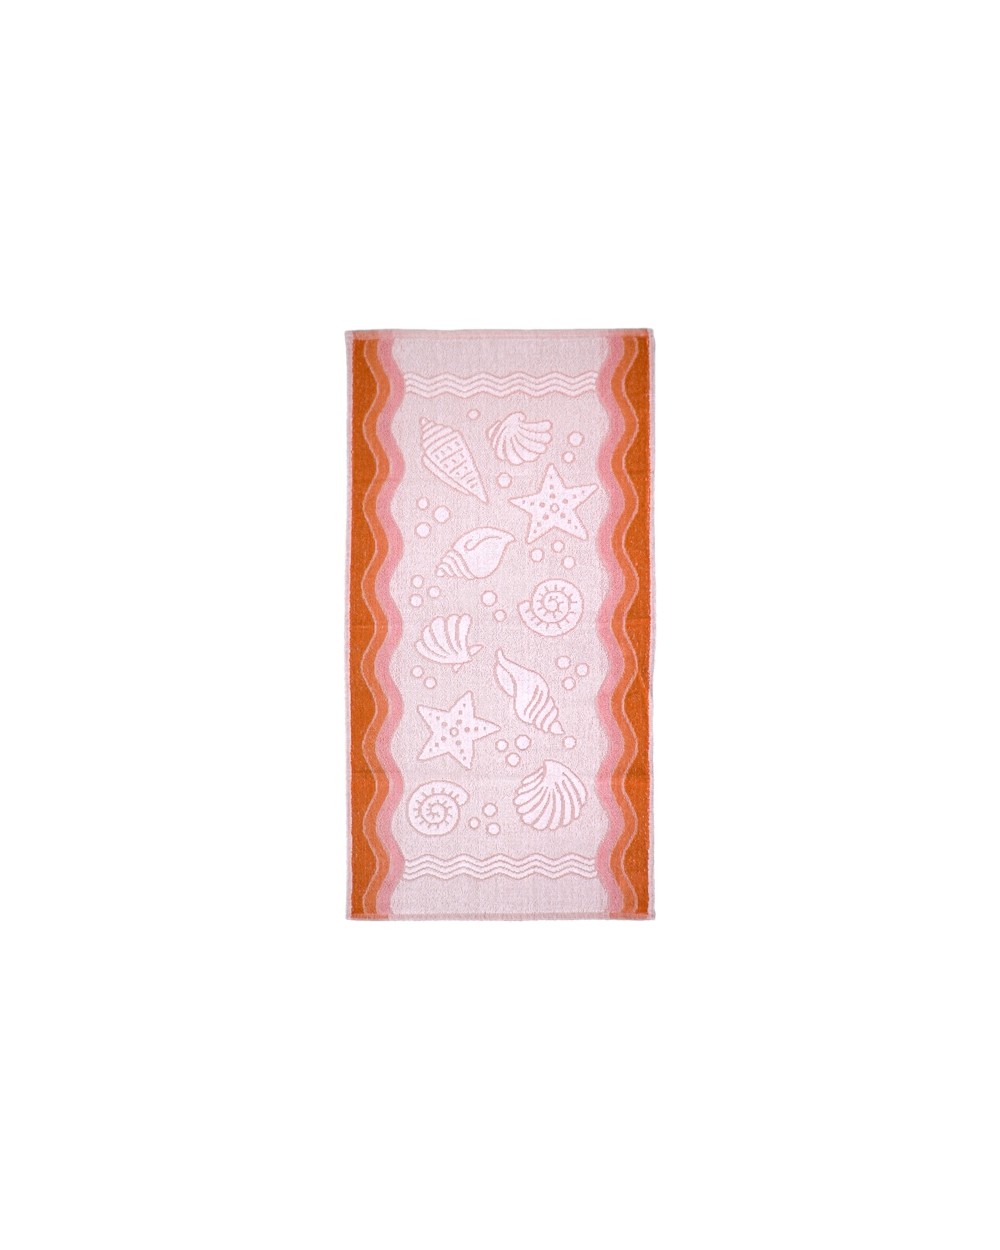 Ręcznik Flora Ocean bawełna 40x60 brzoskwiniowy